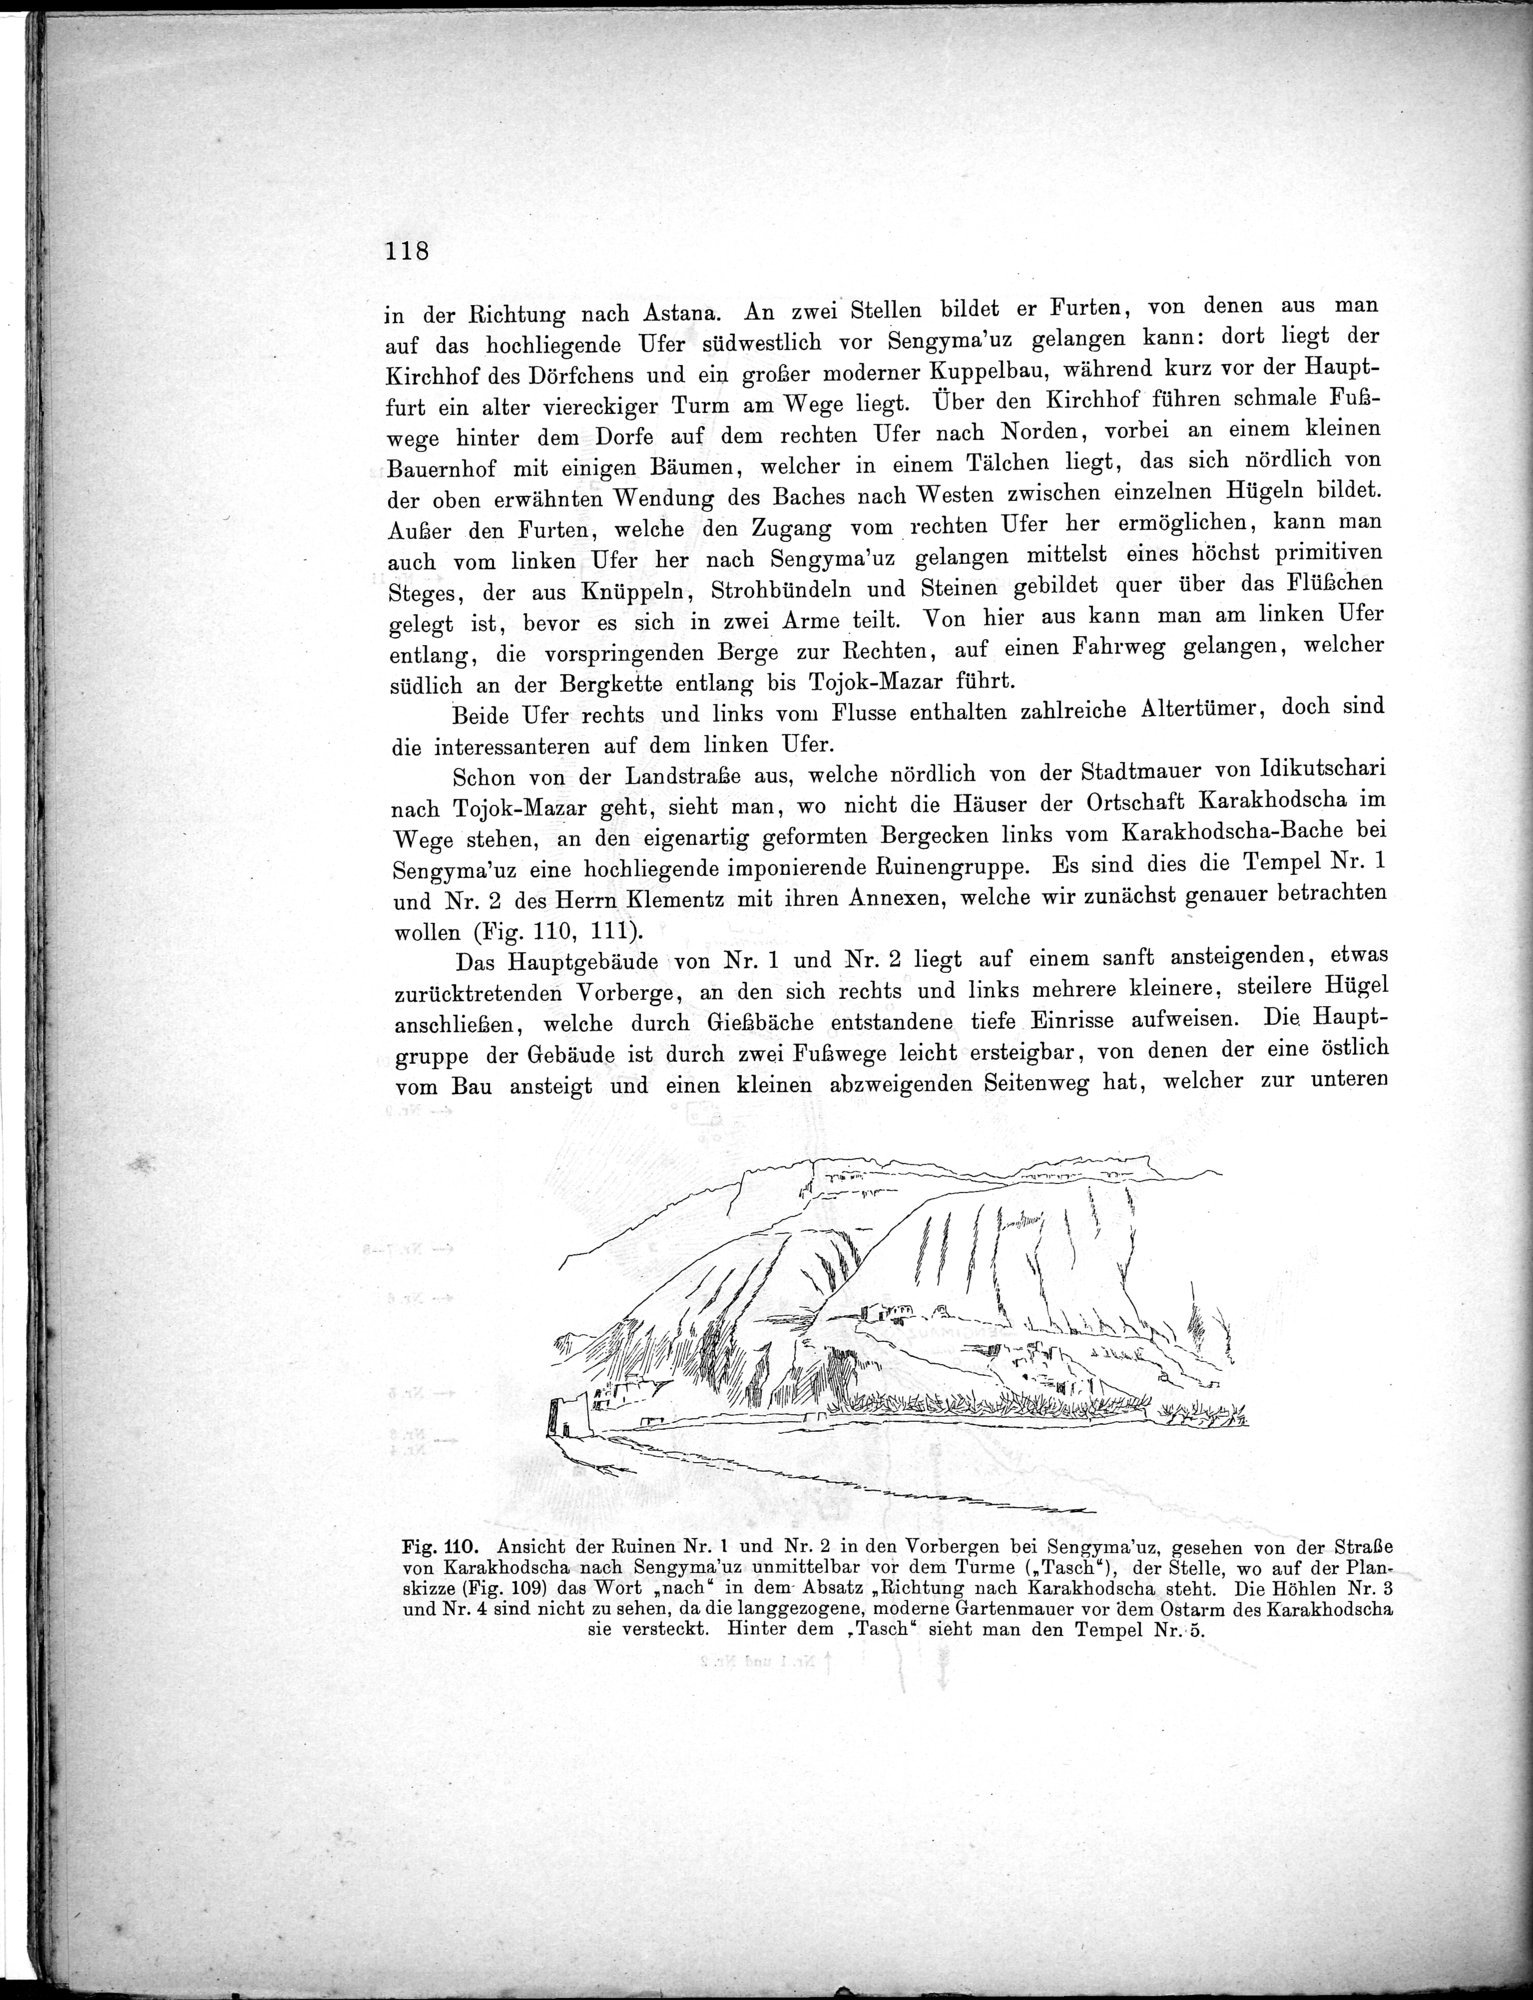 Bericht über archäologische Arbeiten in Idikutschari und Umgebung im Winter 1902-1903 : vol.1 / Page 128 (Grayscale High Resolution Image)